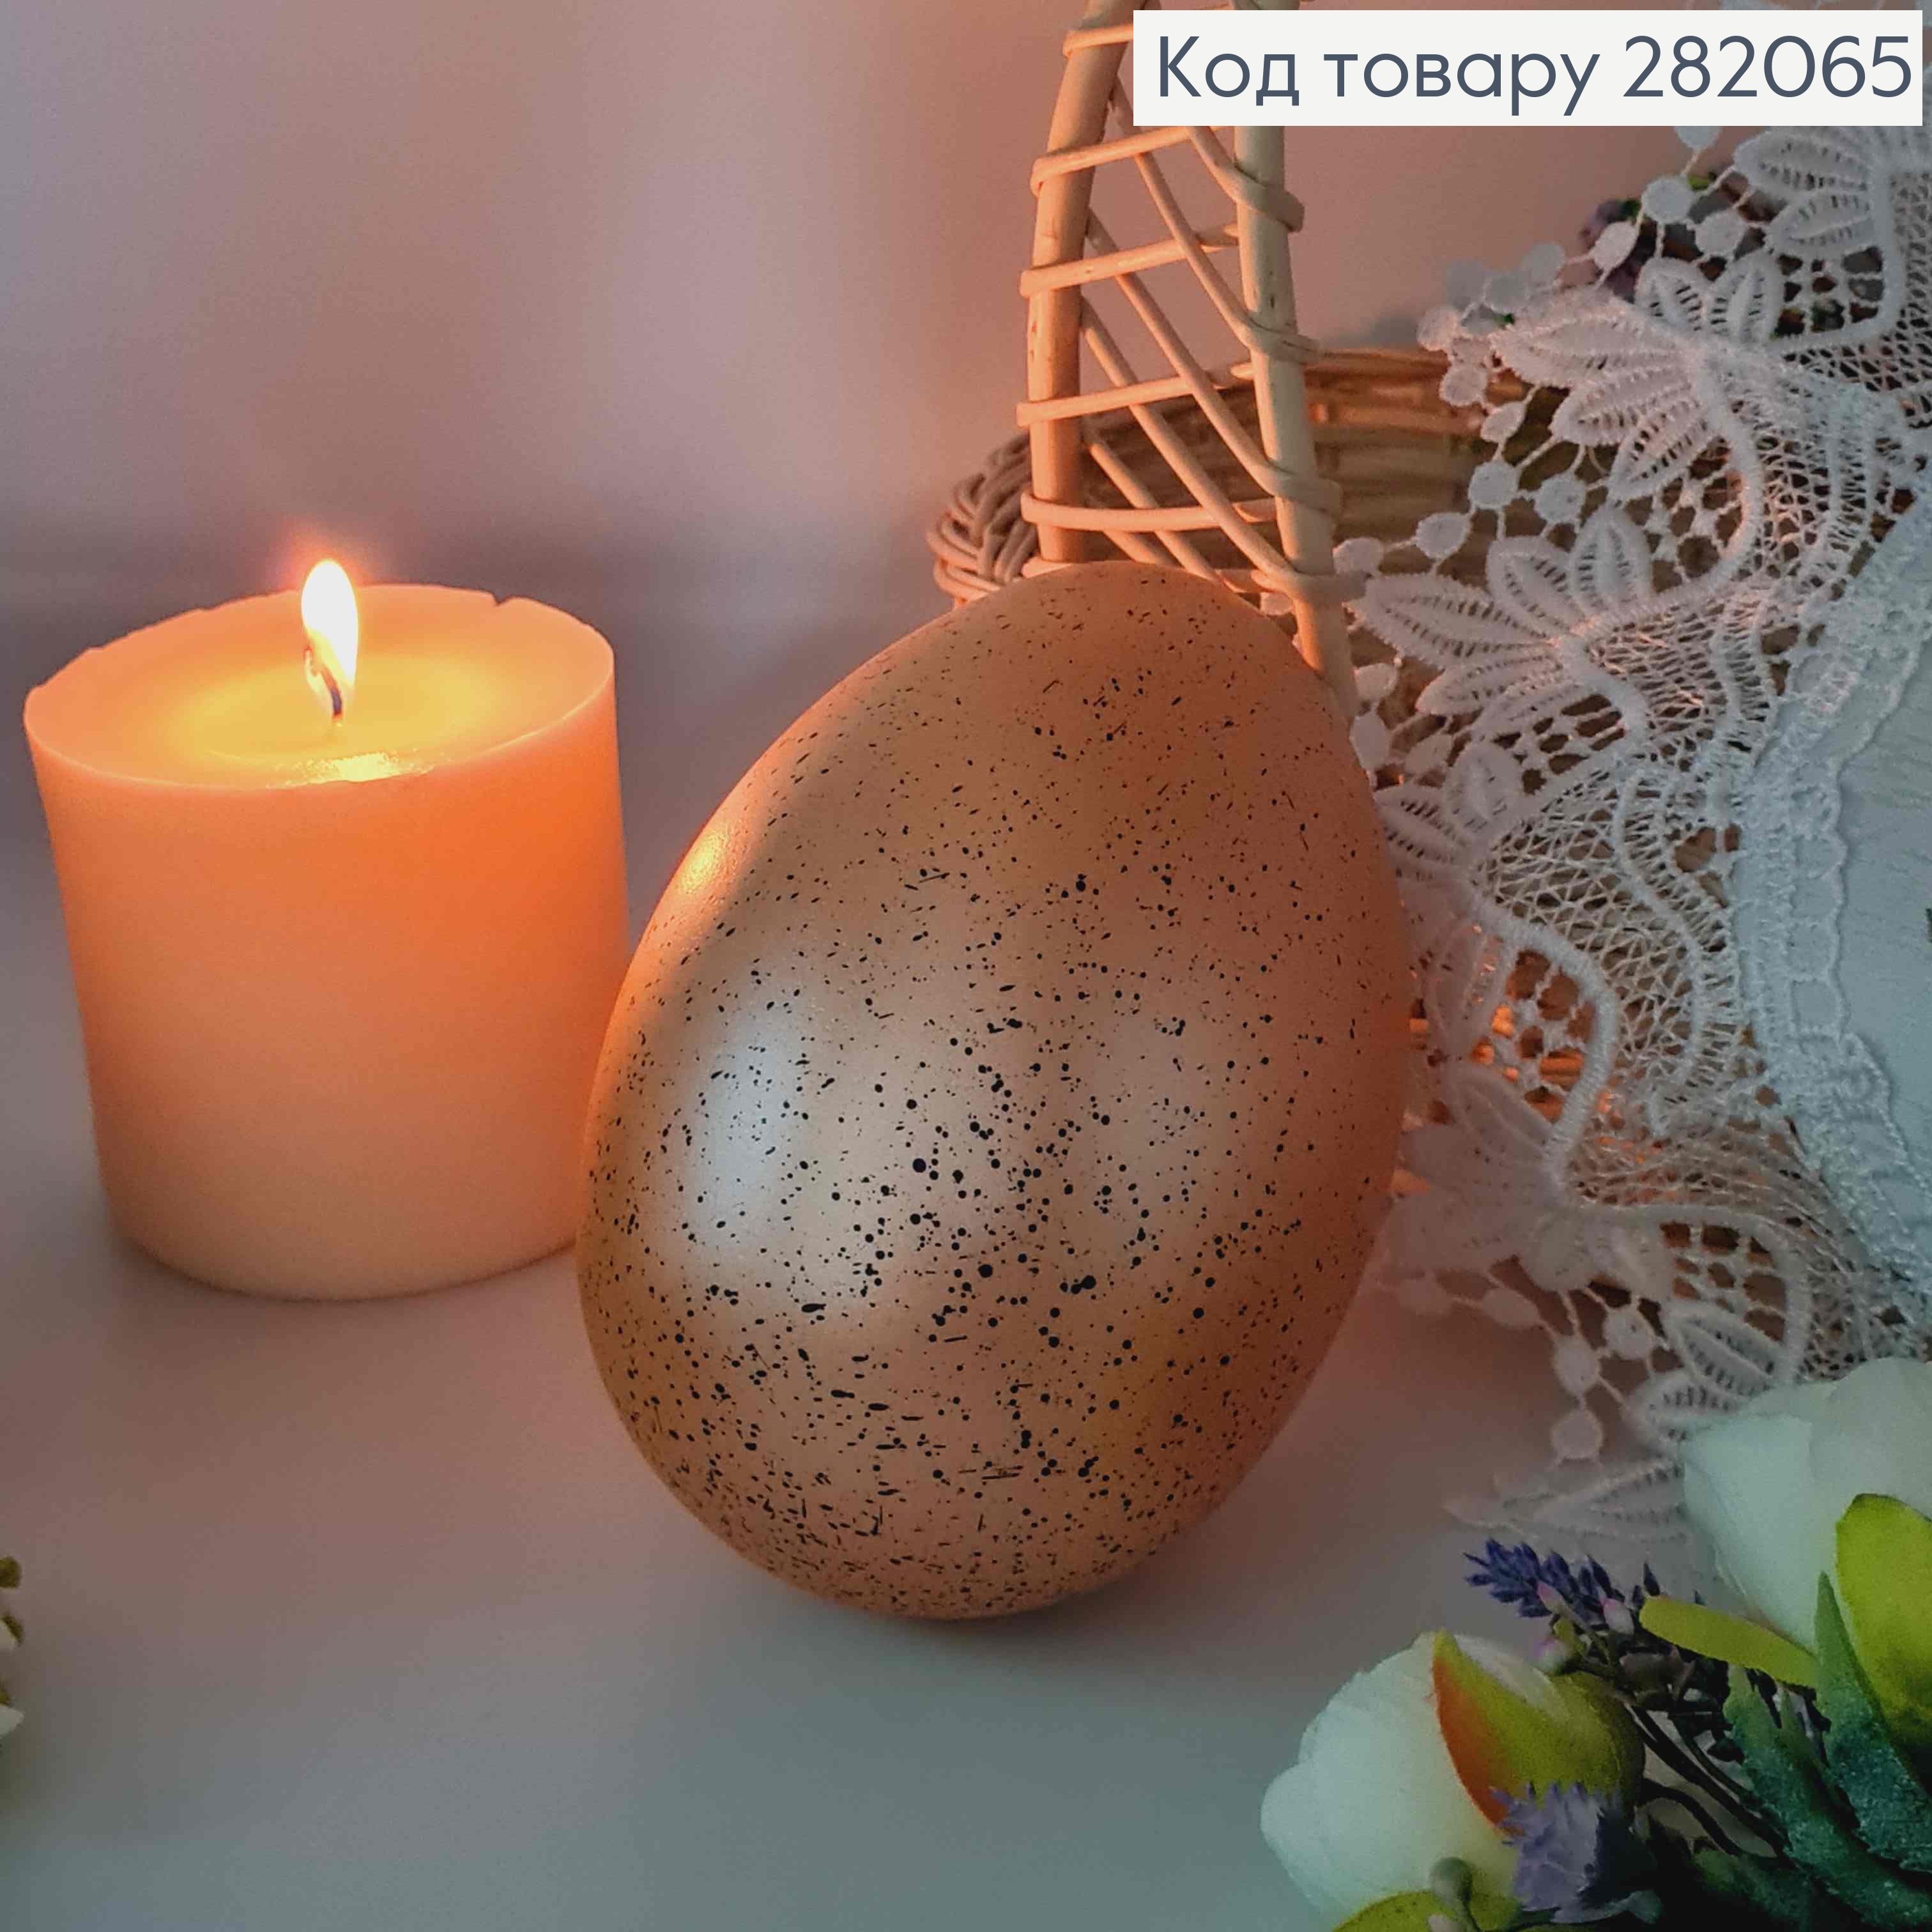 Яйцо страусиное, с черным вкраплением оранжевого цвета, 15*10см. 282065 фото 2